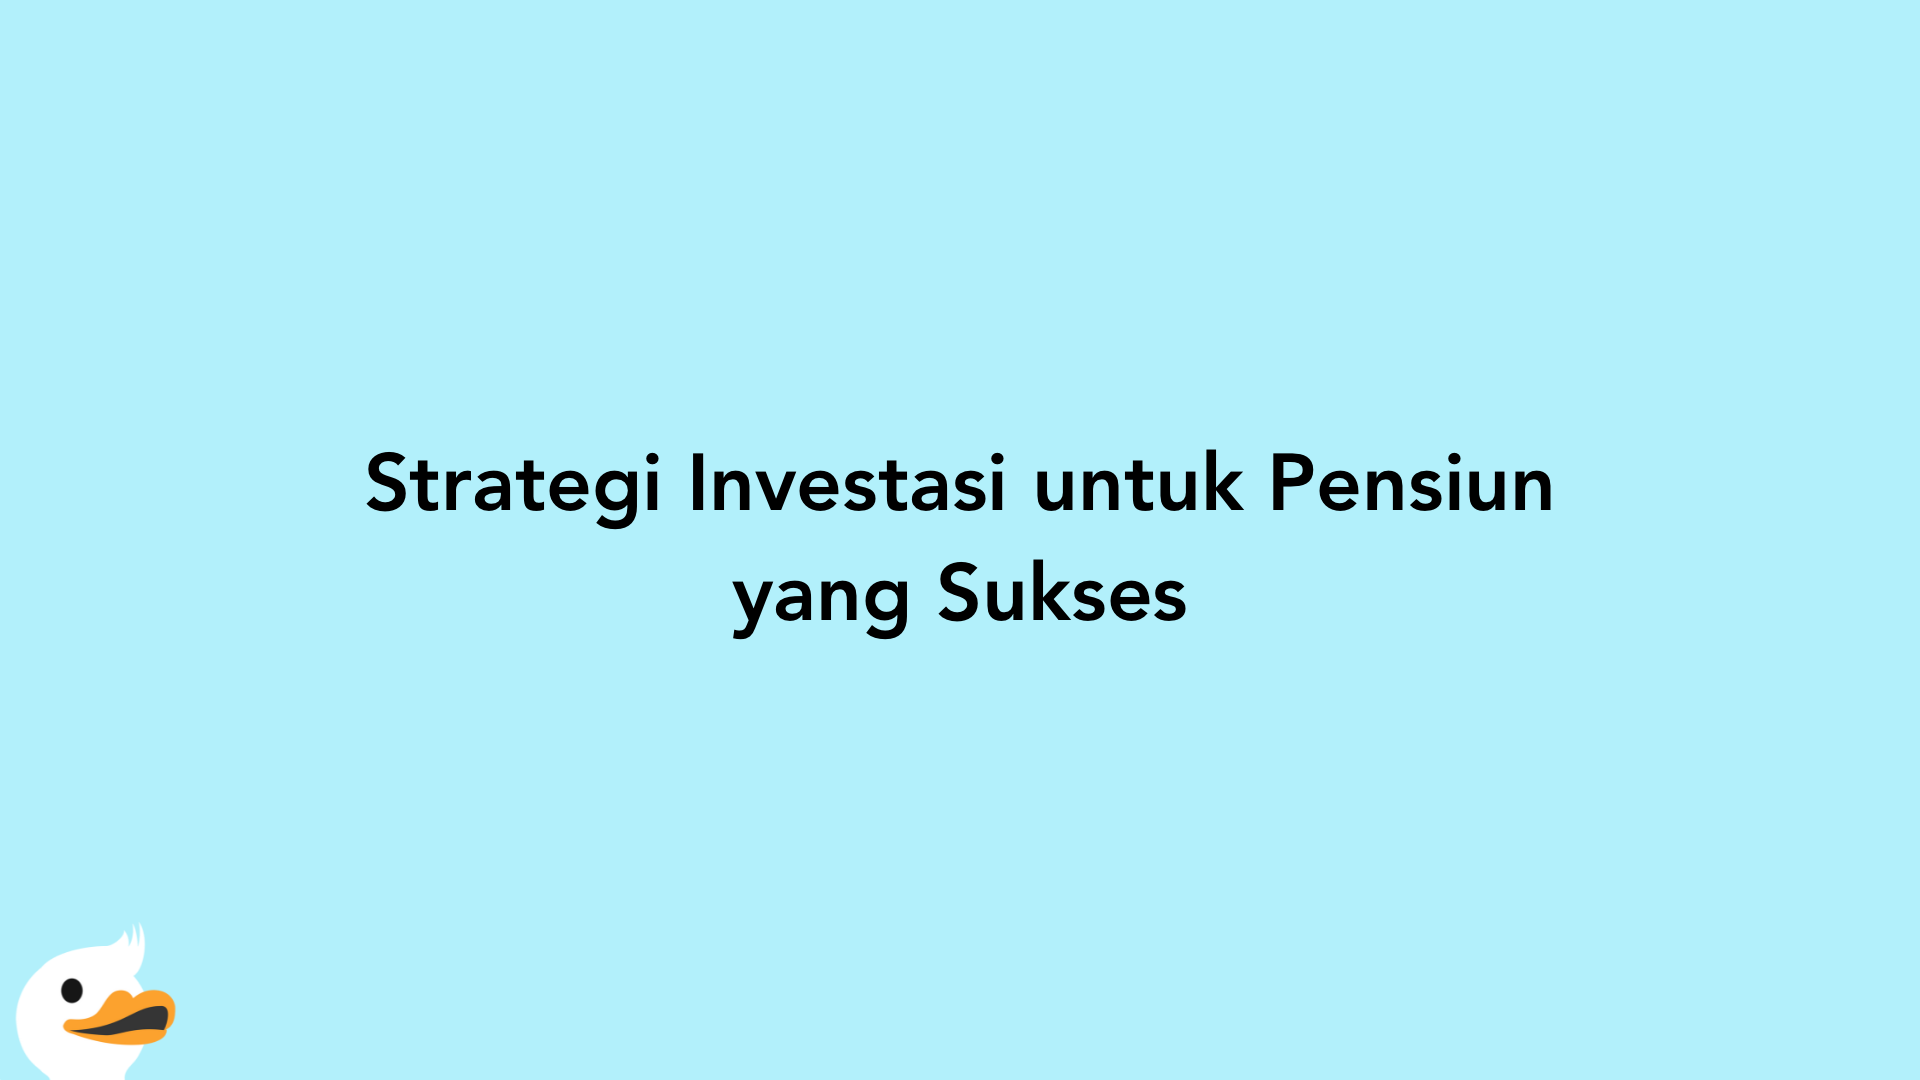 Strategi Investasi untuk Pensiun yang Sukses